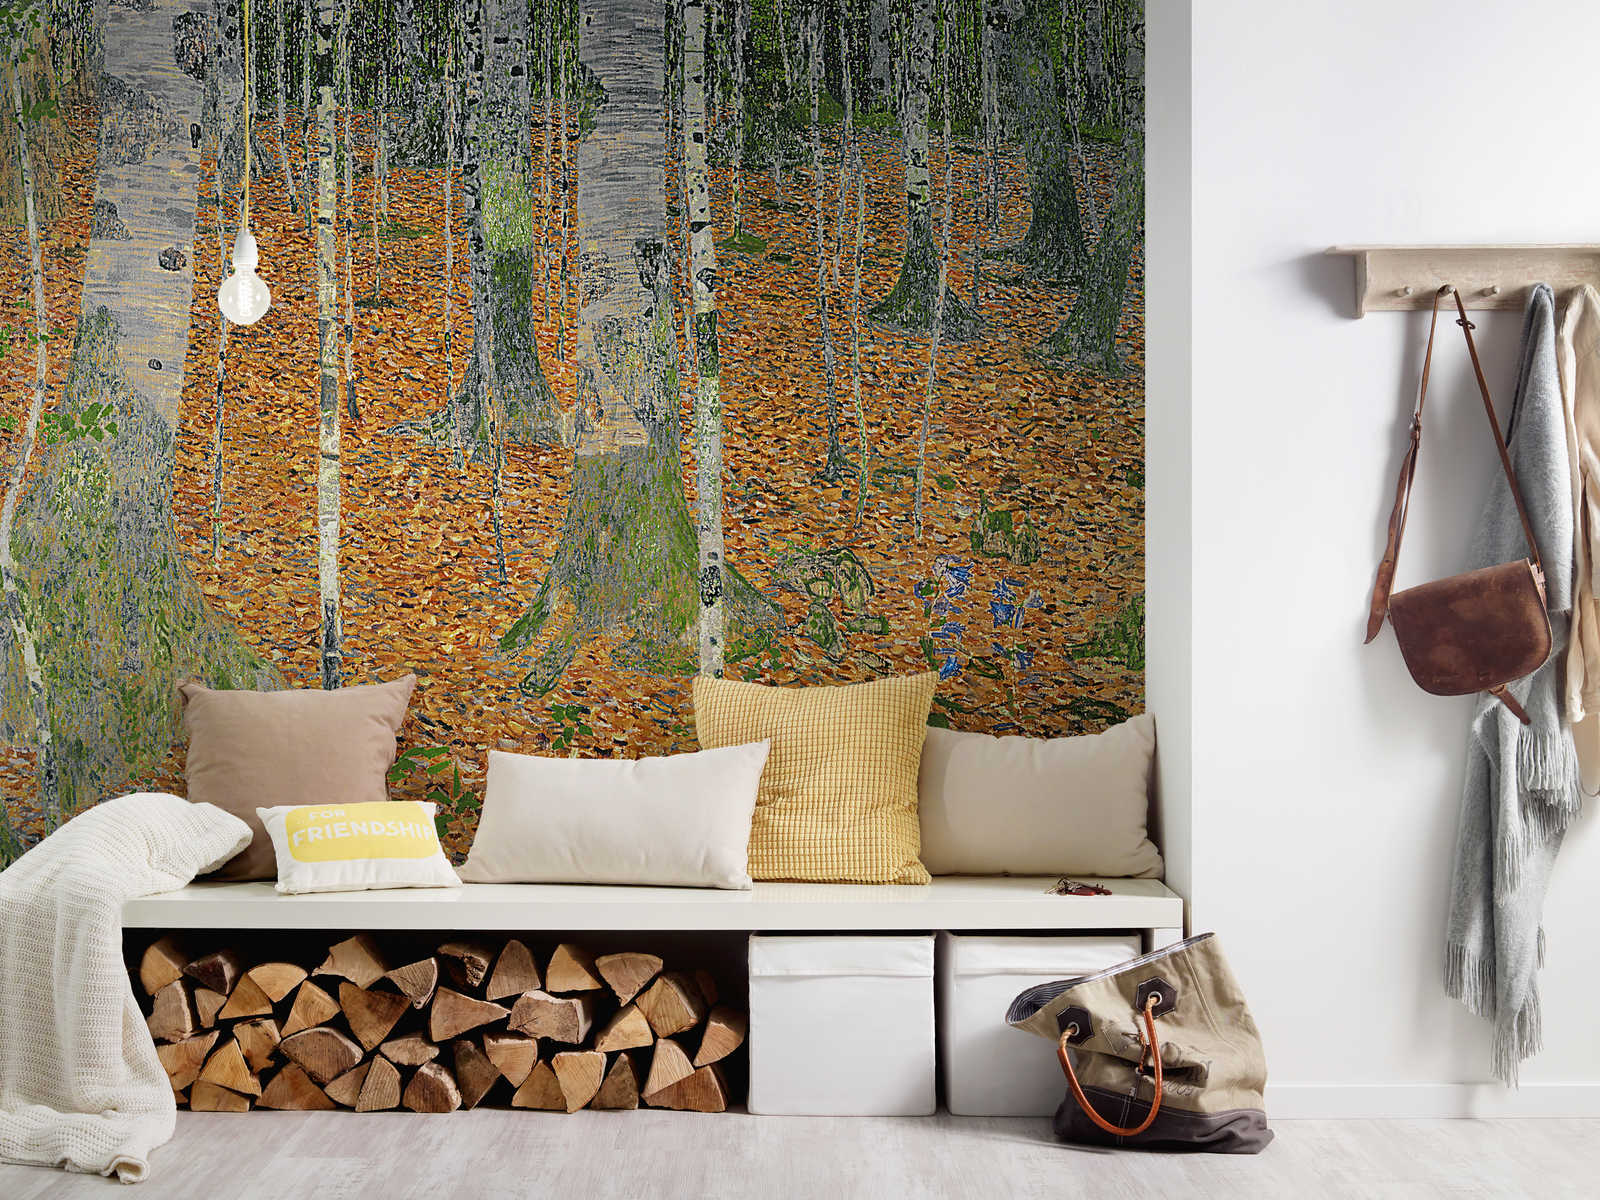             Photo wallpaper "The birch forest" by Gustav Klimt
        